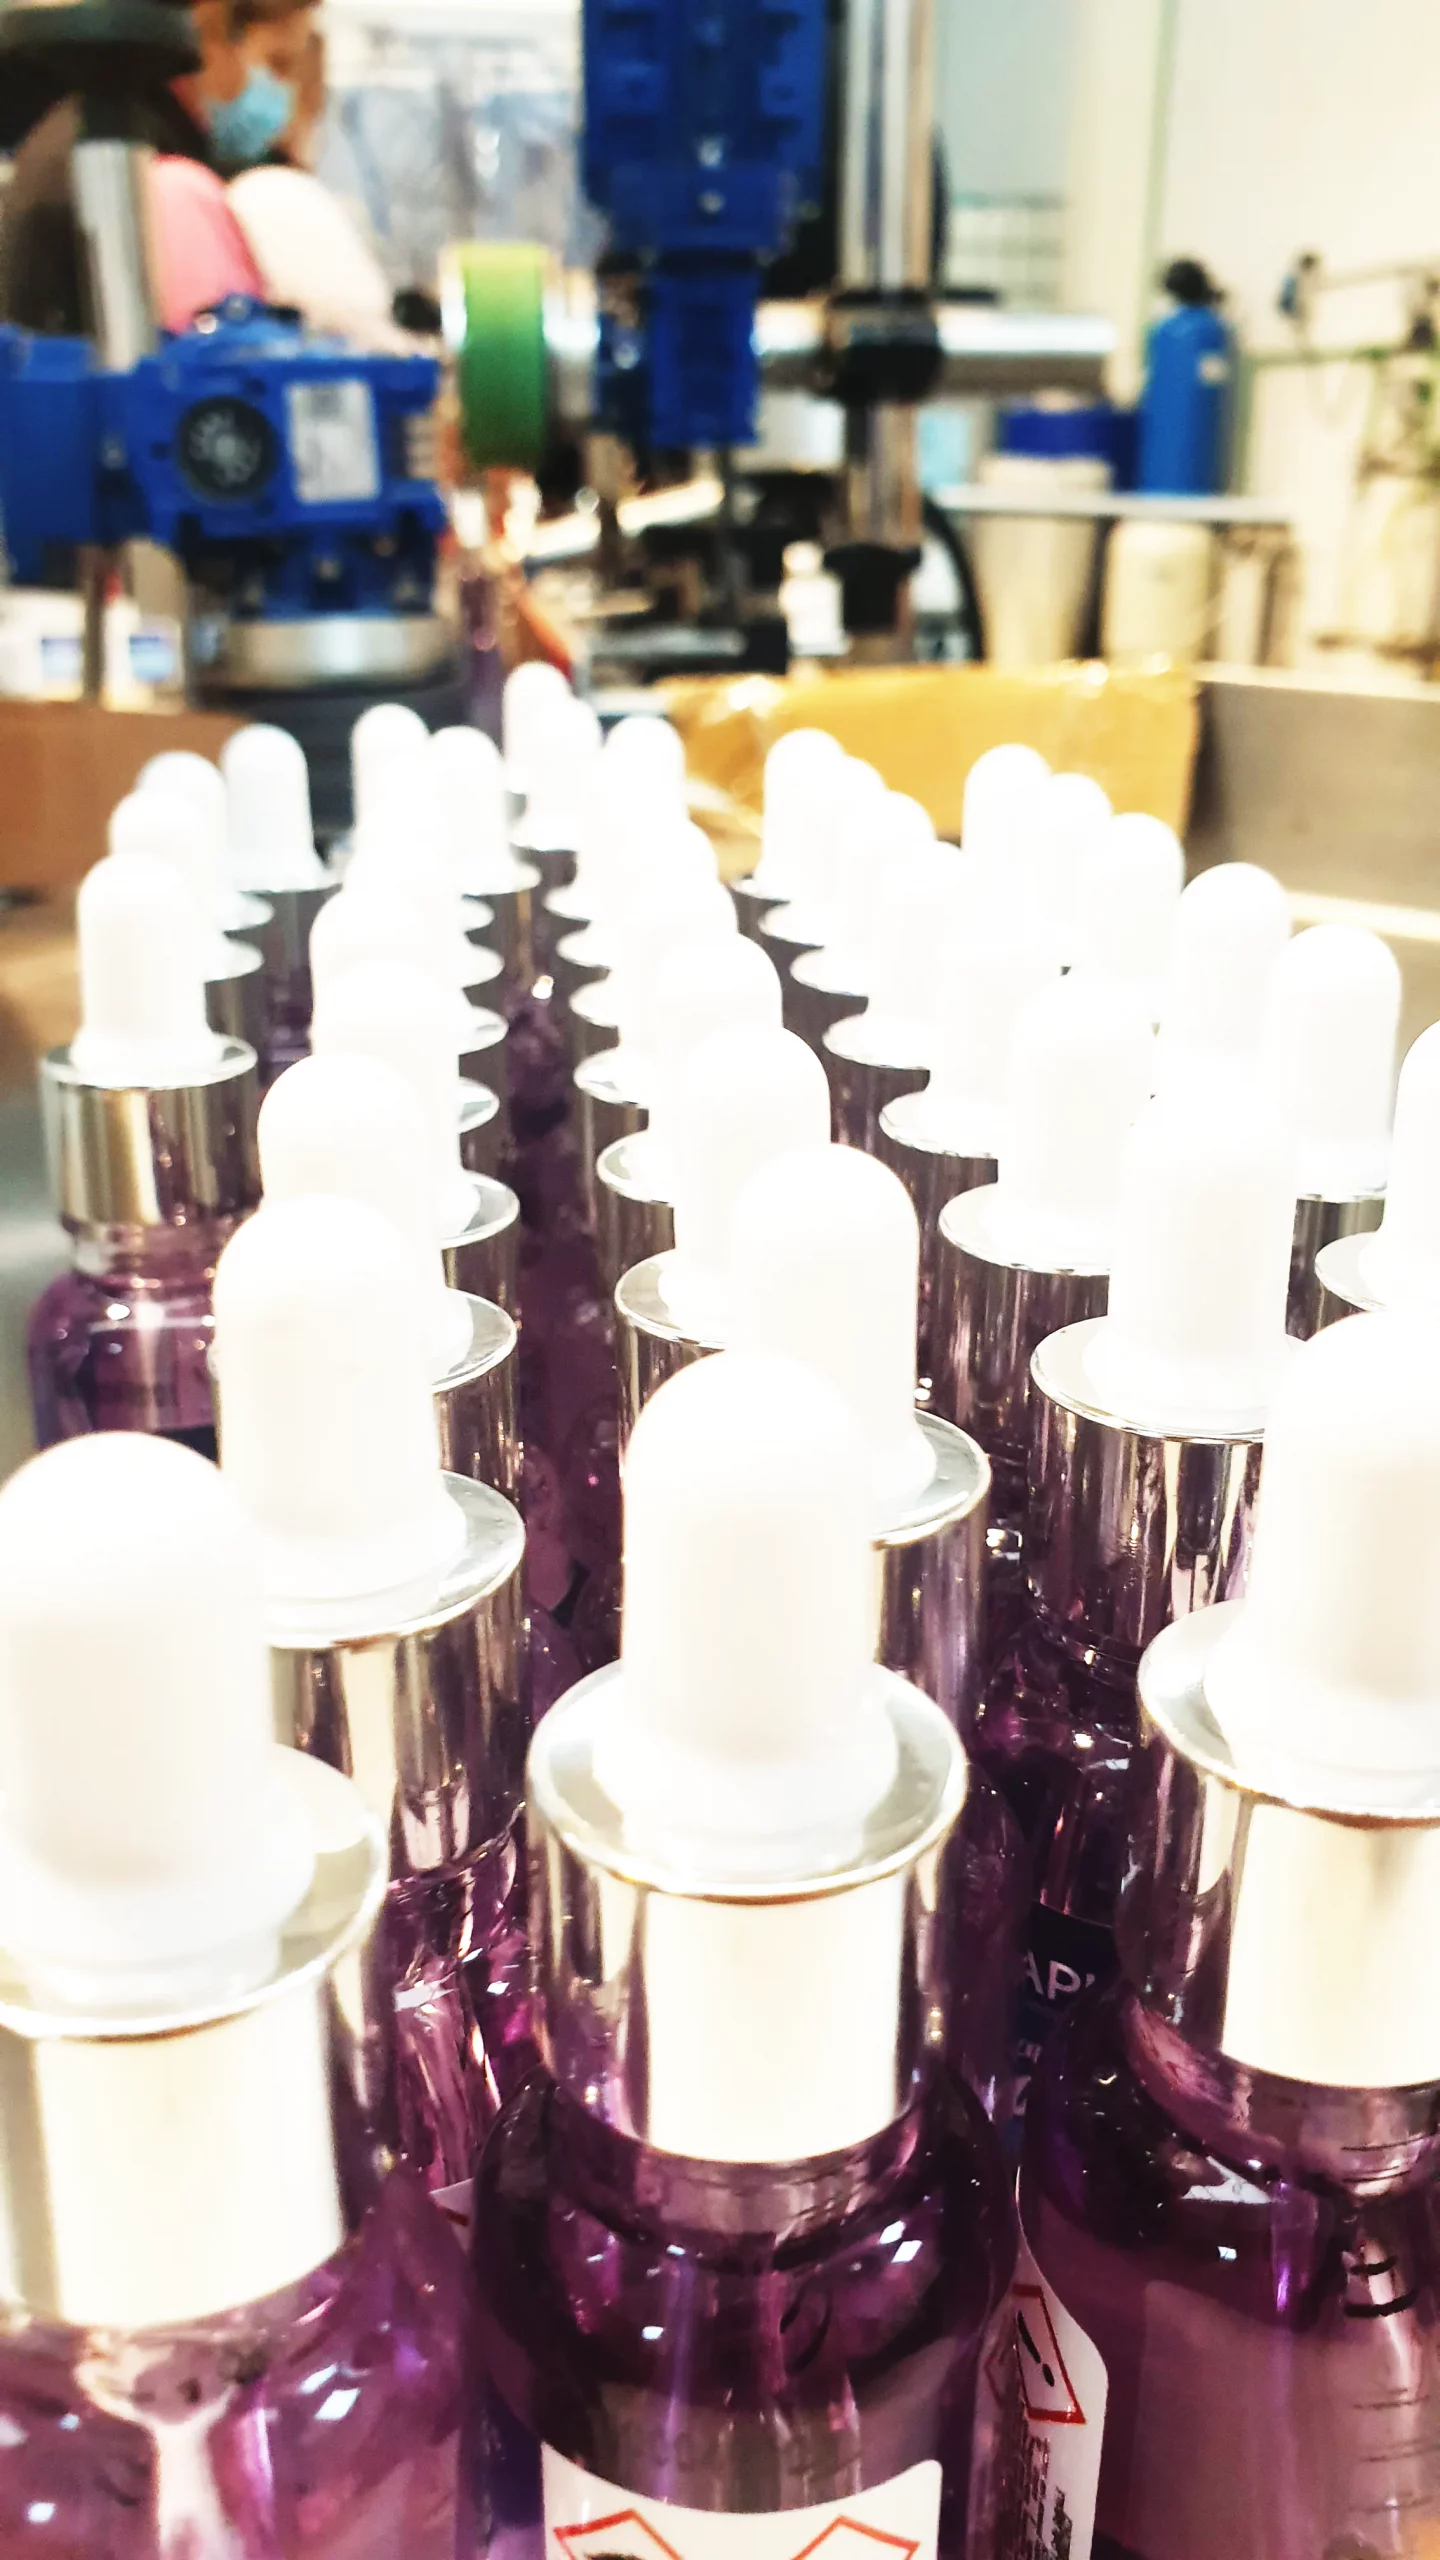 arrojar polvo en los ojos Inconcebible cinta Fábrica de Perfumes - Laboratorios Syrch - Expertos Fabricantes de Perfumes